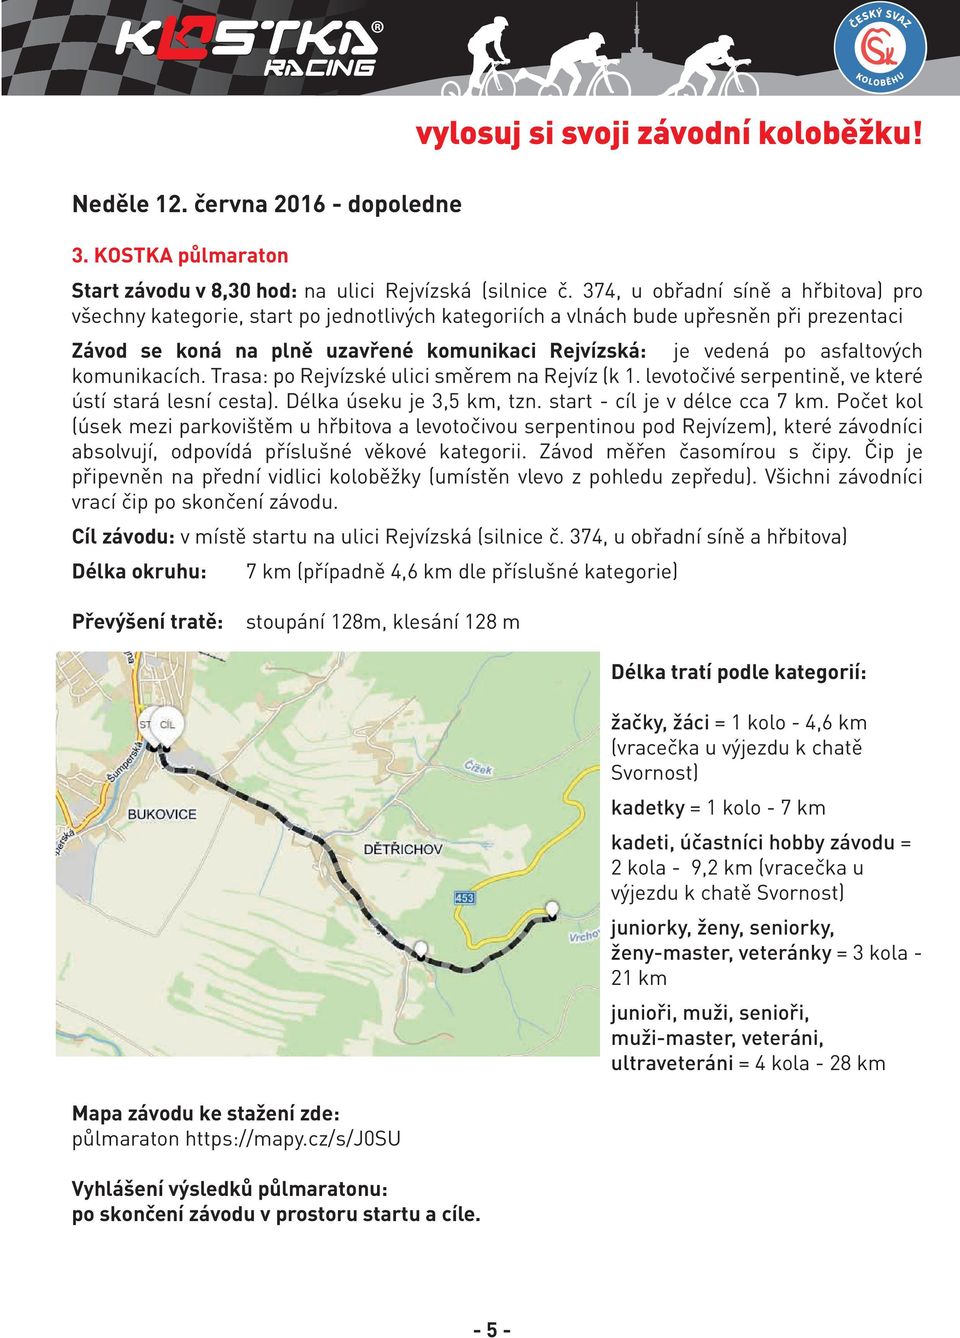 asfaltových komunikacích. Trasa: po Rejvízské ulici směrem na Rejvíz (k 1. levotočivé serpentině, ve které ústí stará lesní cesta). Délka úseku je 3,5 km, tzn. start - cíl je v délce cca 7 km.